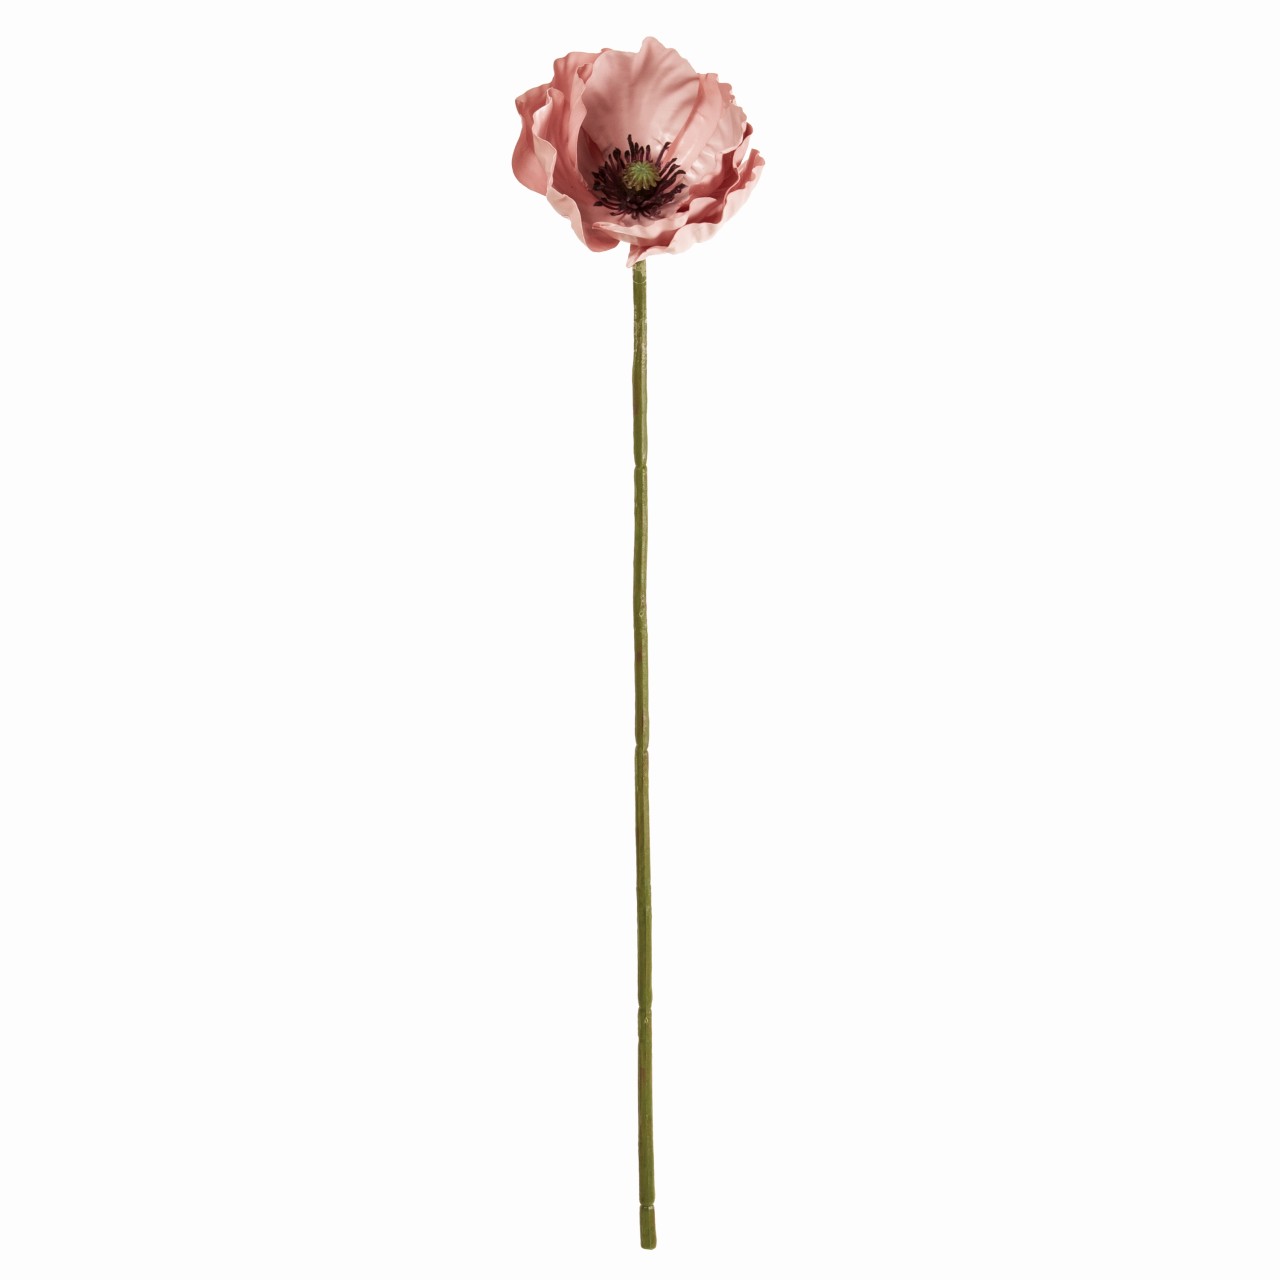 マイフラ 通販 Magiq ポピーマカロン ピンク アーティフィシャルフラワー 造花 Fm 002 ポピー ピンク Magiq アーティフィシャルフラワー 造花 全国にmagiq 花器 花資材などをお届けします